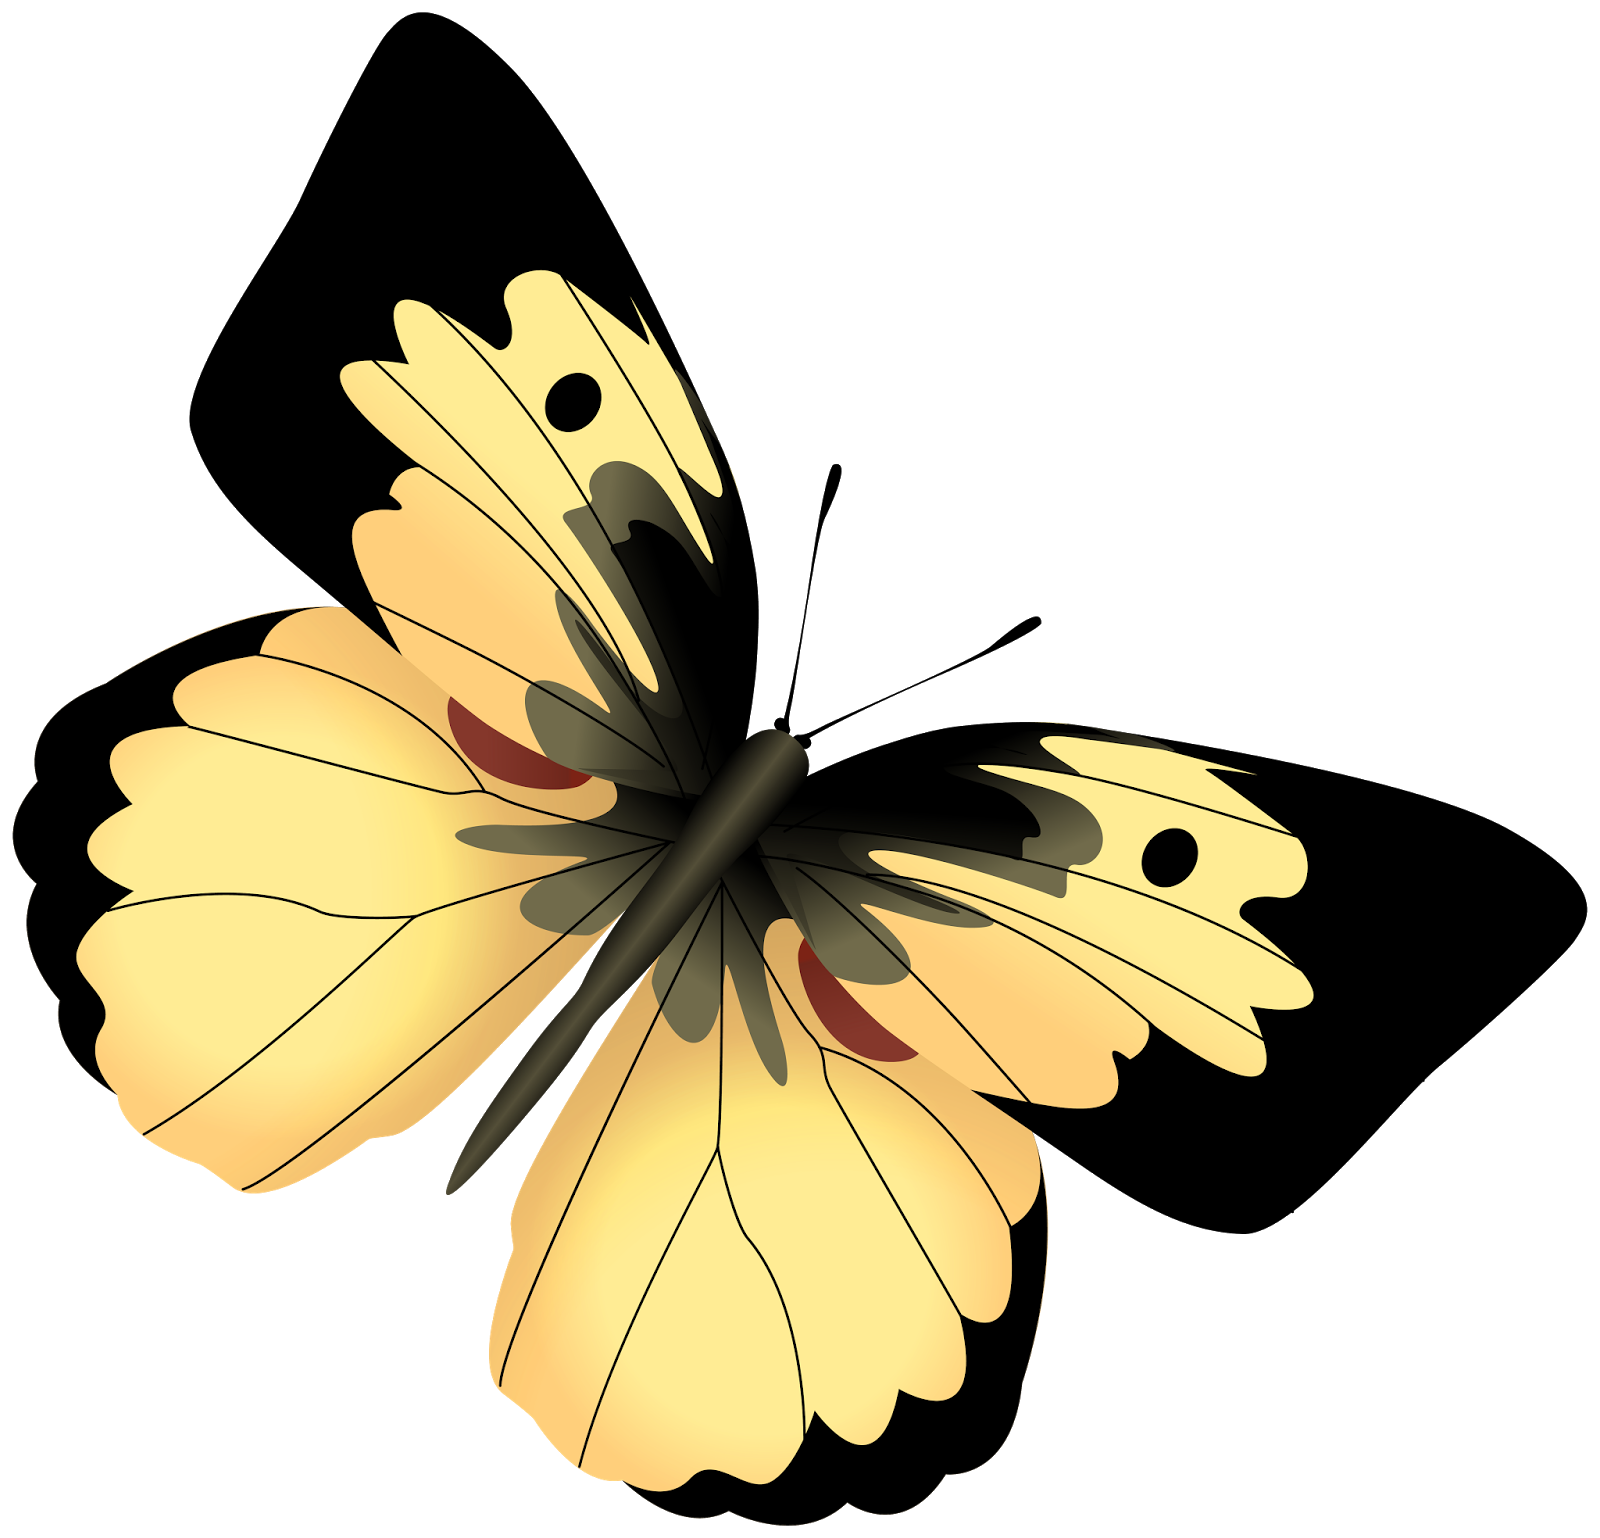 Картинки на прозрачном фоне. Бабочки на белом фоне. Бабочки на просроченном фоне. Желтая бабочка на прозрачном фоне. Желтая бабочка на белом фоне.